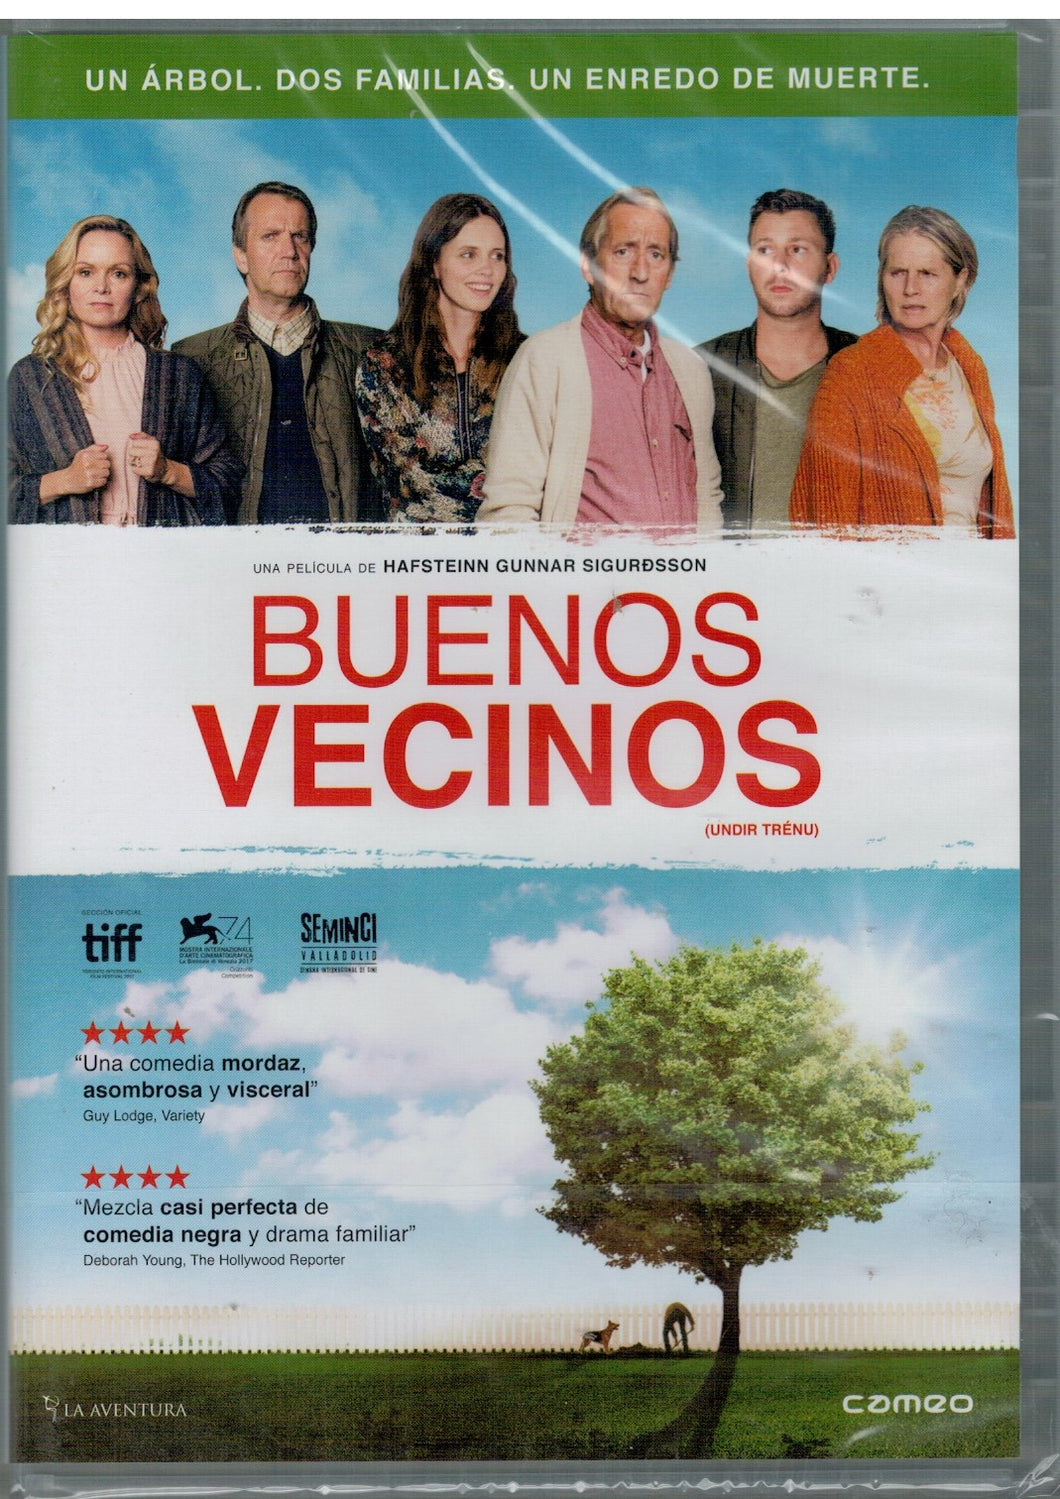 Buenos vecinos (Undir trénu (Under the Tree) (DVD Nuevo)